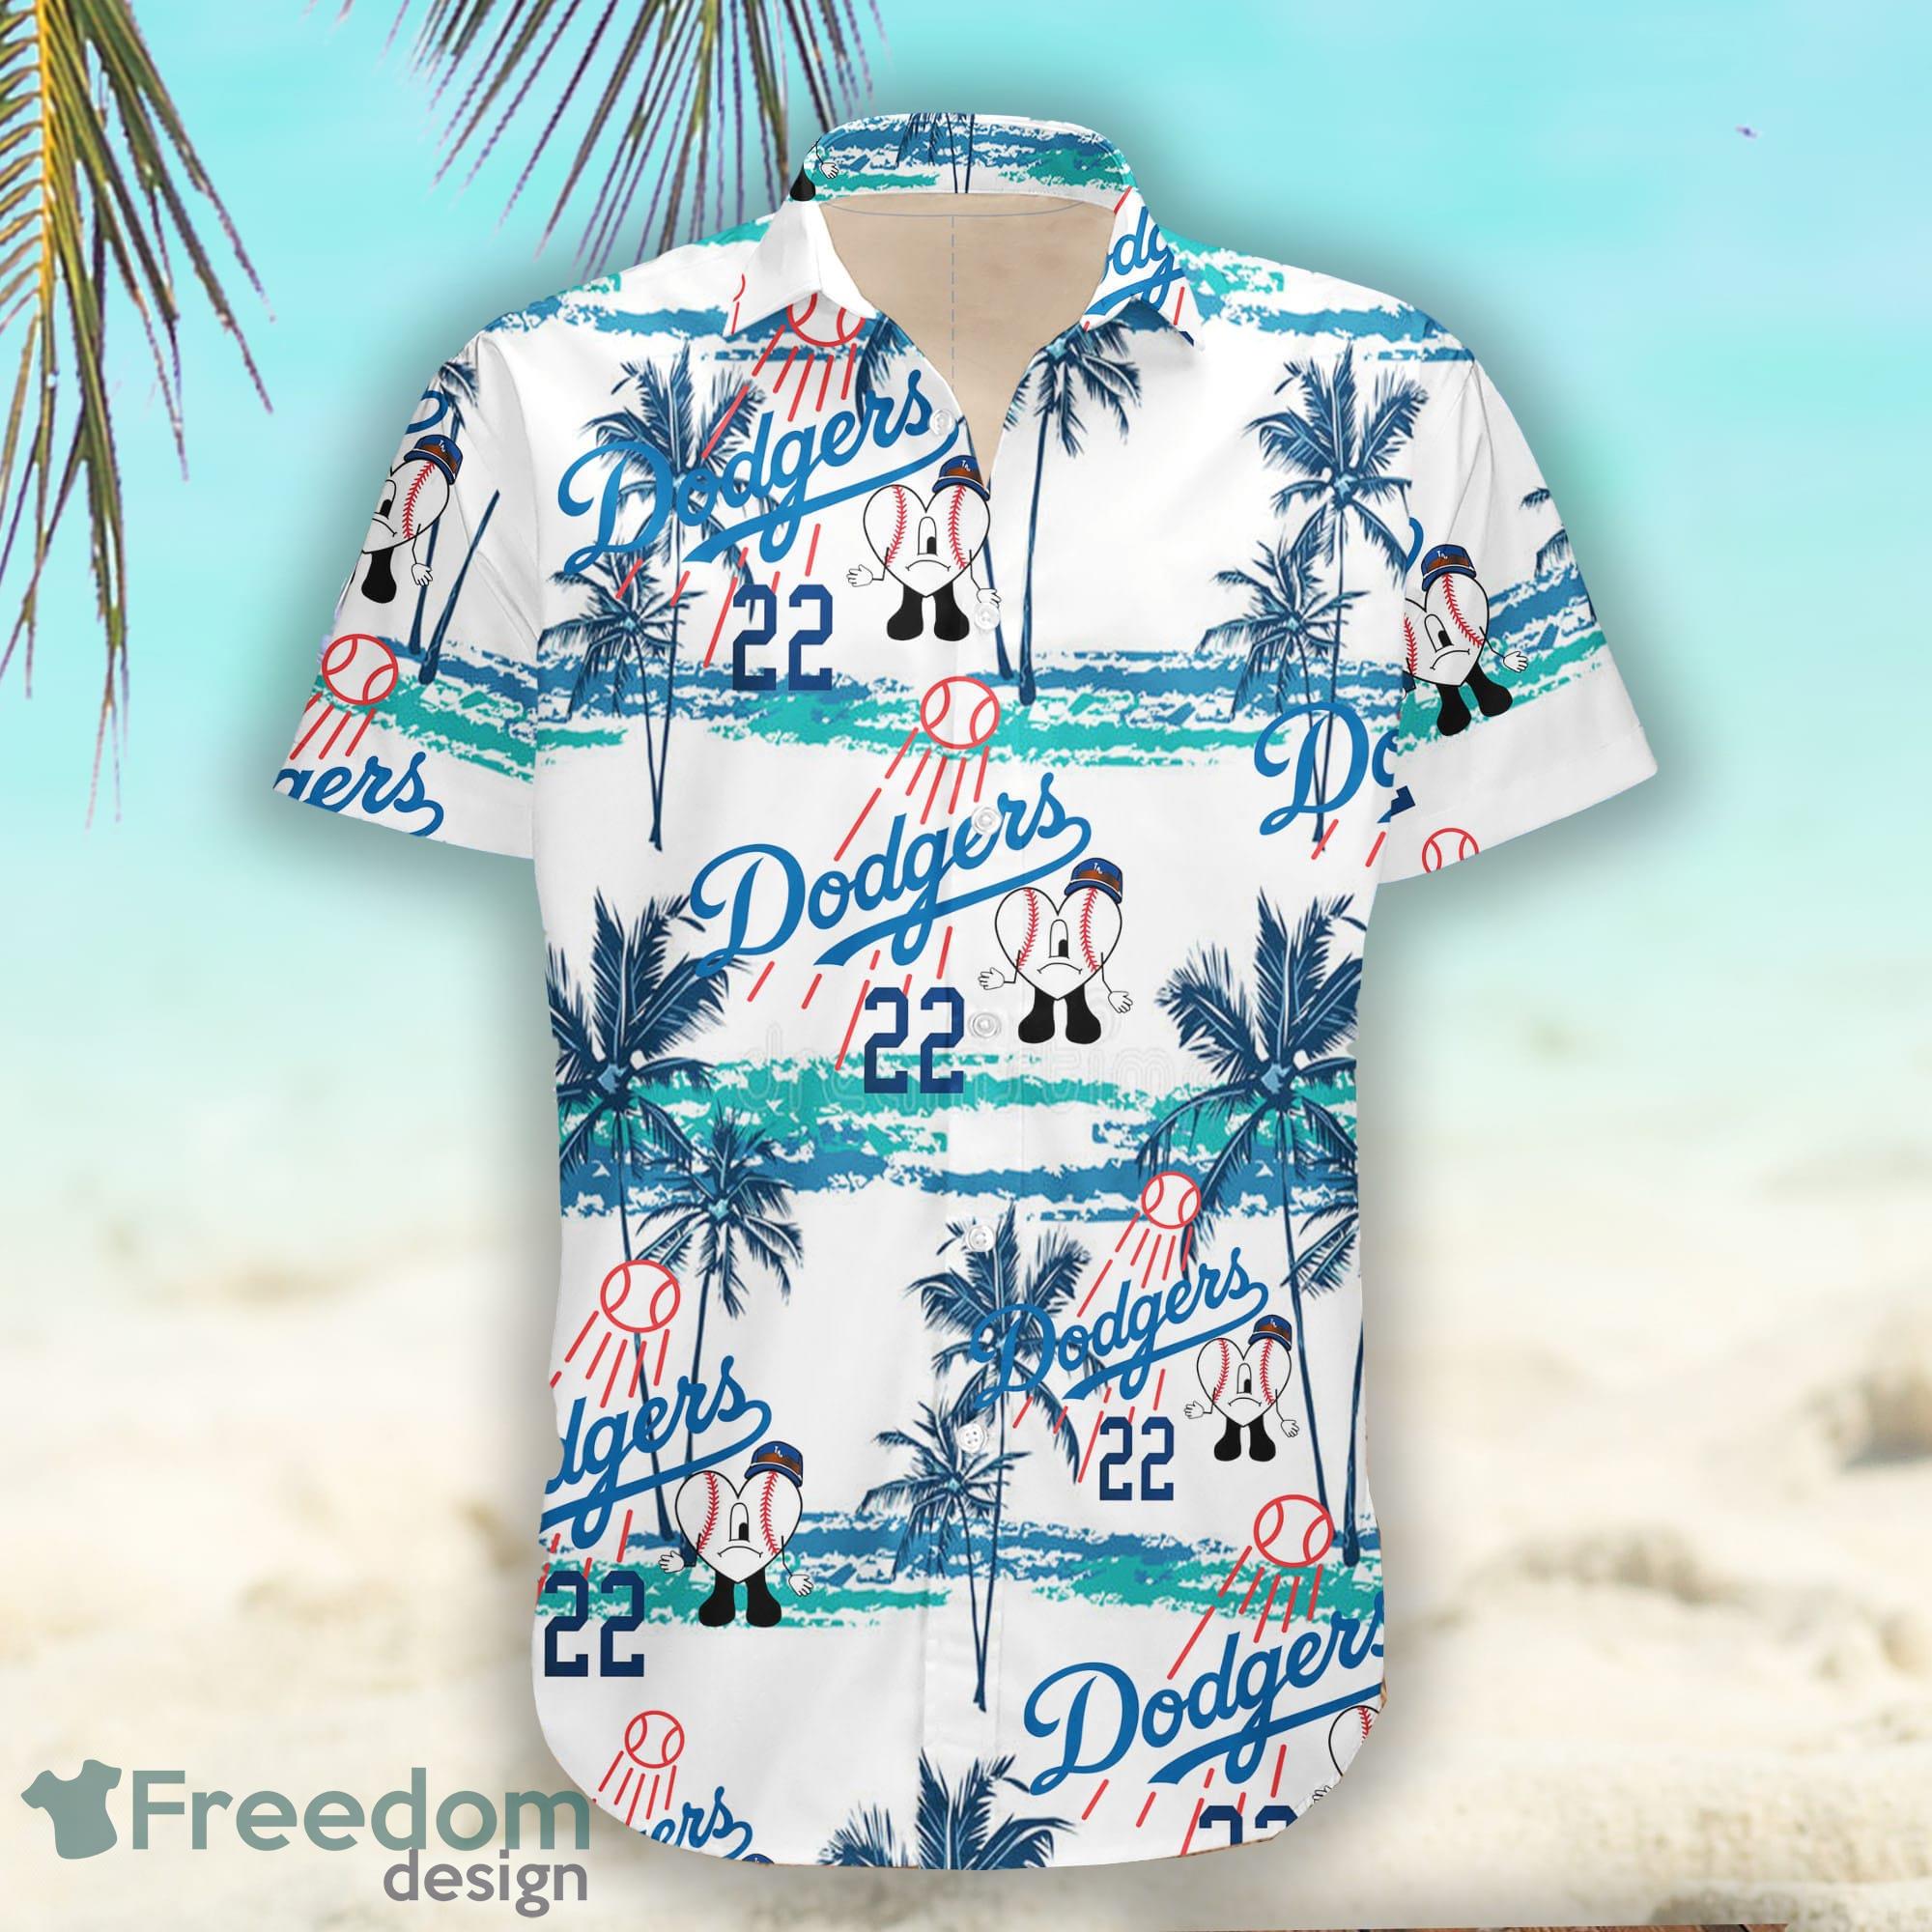 Bad Bunny Dodgers Hawaiian Shirt For Fans